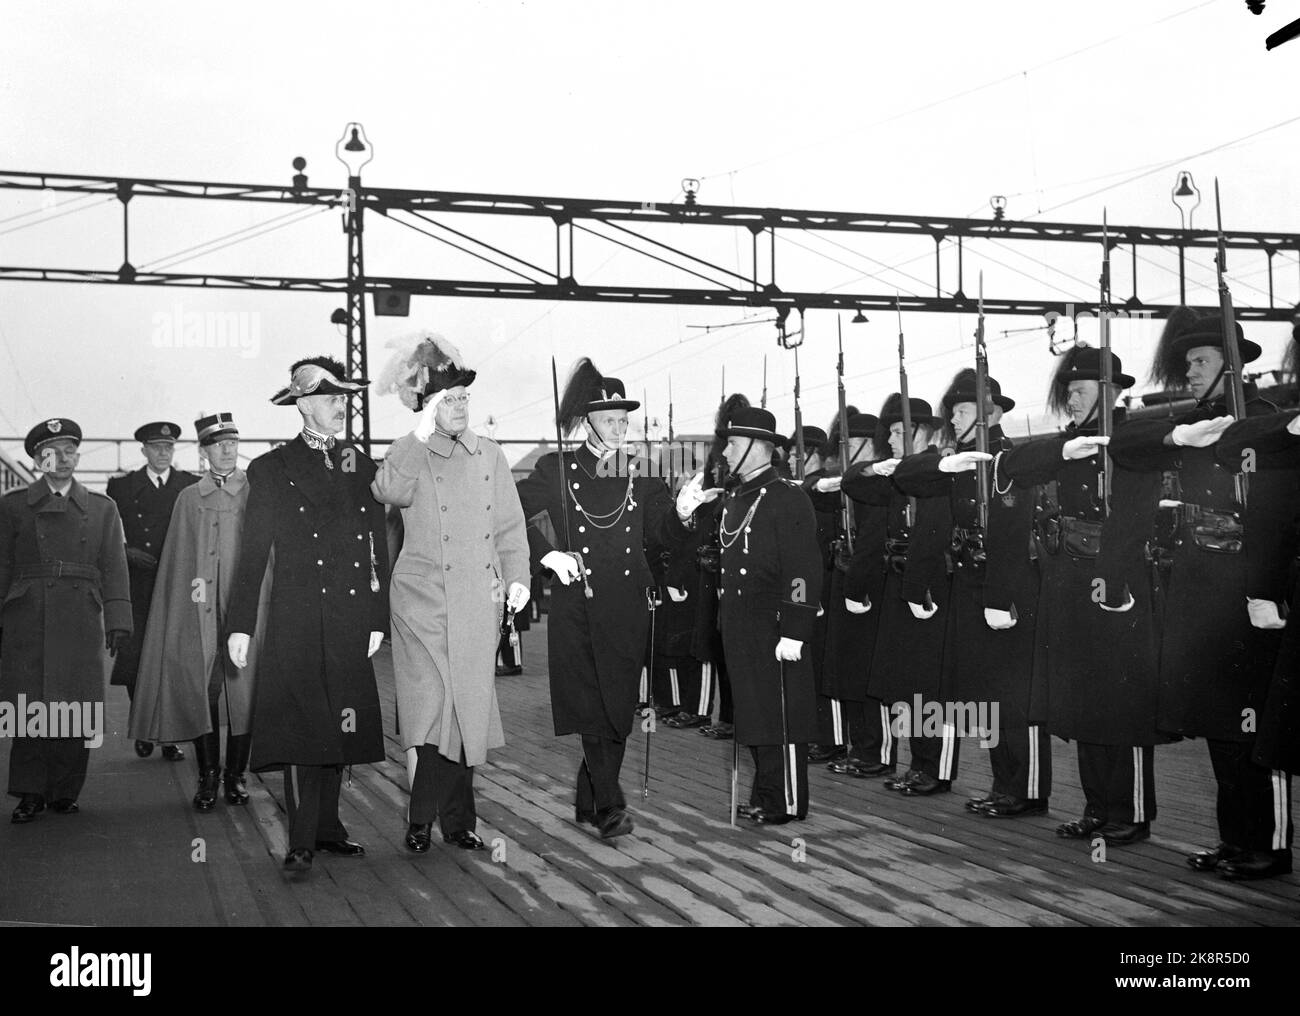 Oslo 195203. König Gustaf Adolf und Königin Louise von Schweden werden offiziell in Norwegen besucht. Hier sehen wir König Gustaf Adolf, der bei der Ankunft am Ostbahnhof mit König Haakon begrüßt. Foto: NTB / NTB Stockfoto